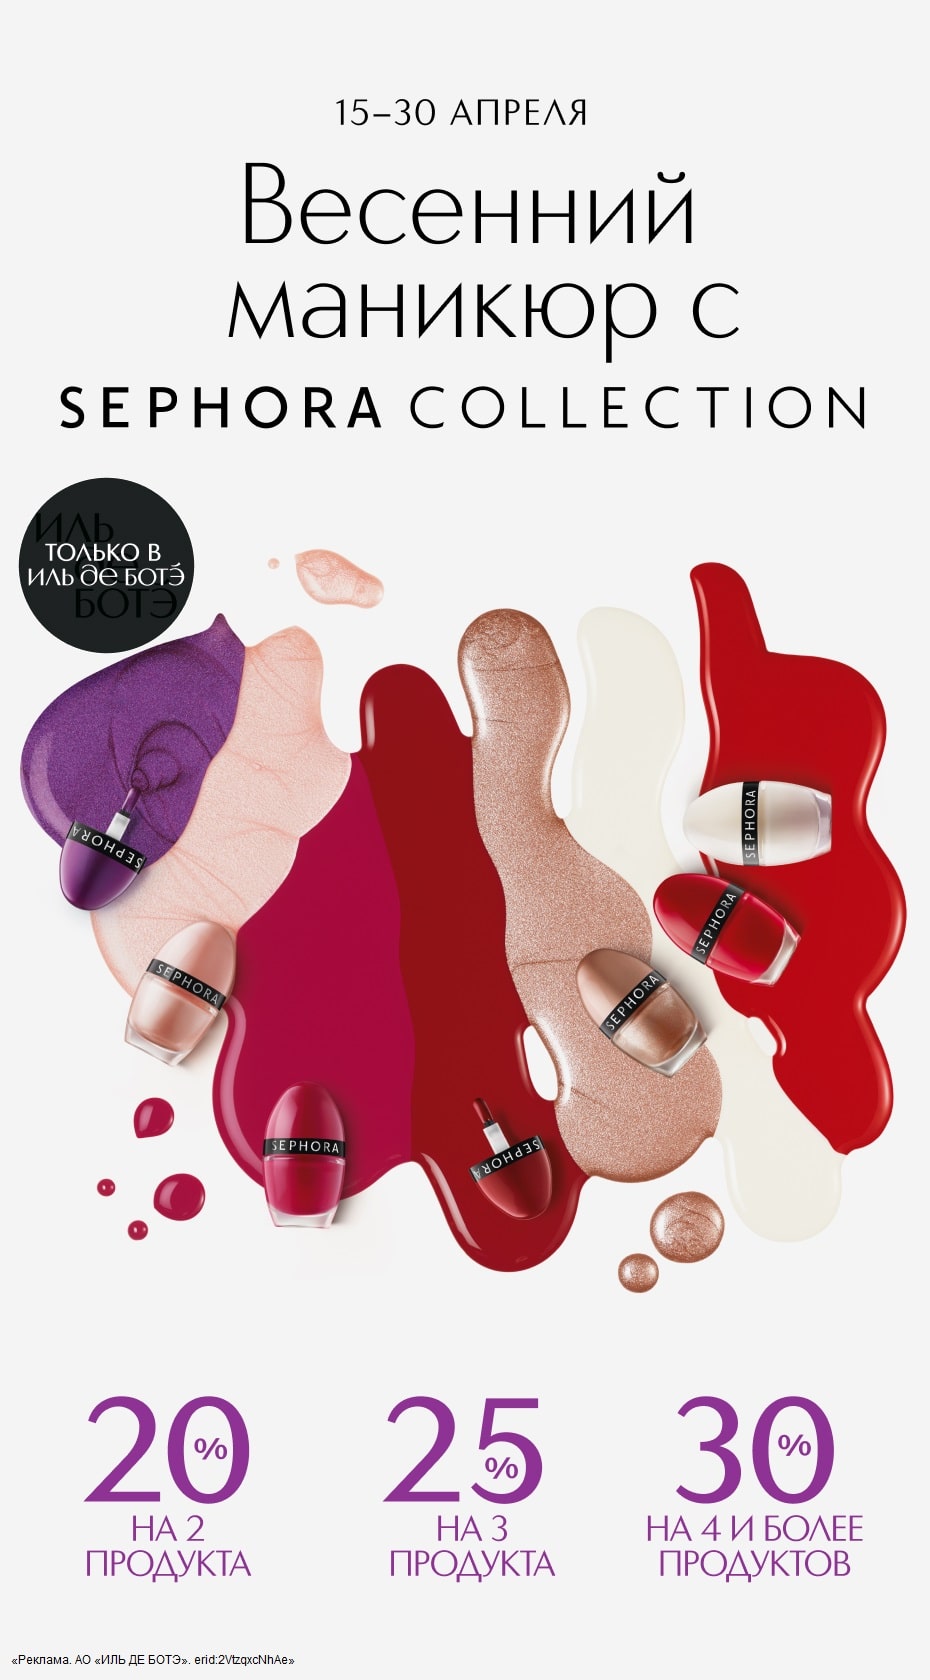 С 15 по 30 апреля интернет-магазин ИЛЬ ДЕ БОТЭ предлагает специальную акцию на все средства для маникюра от Sephora Collection.